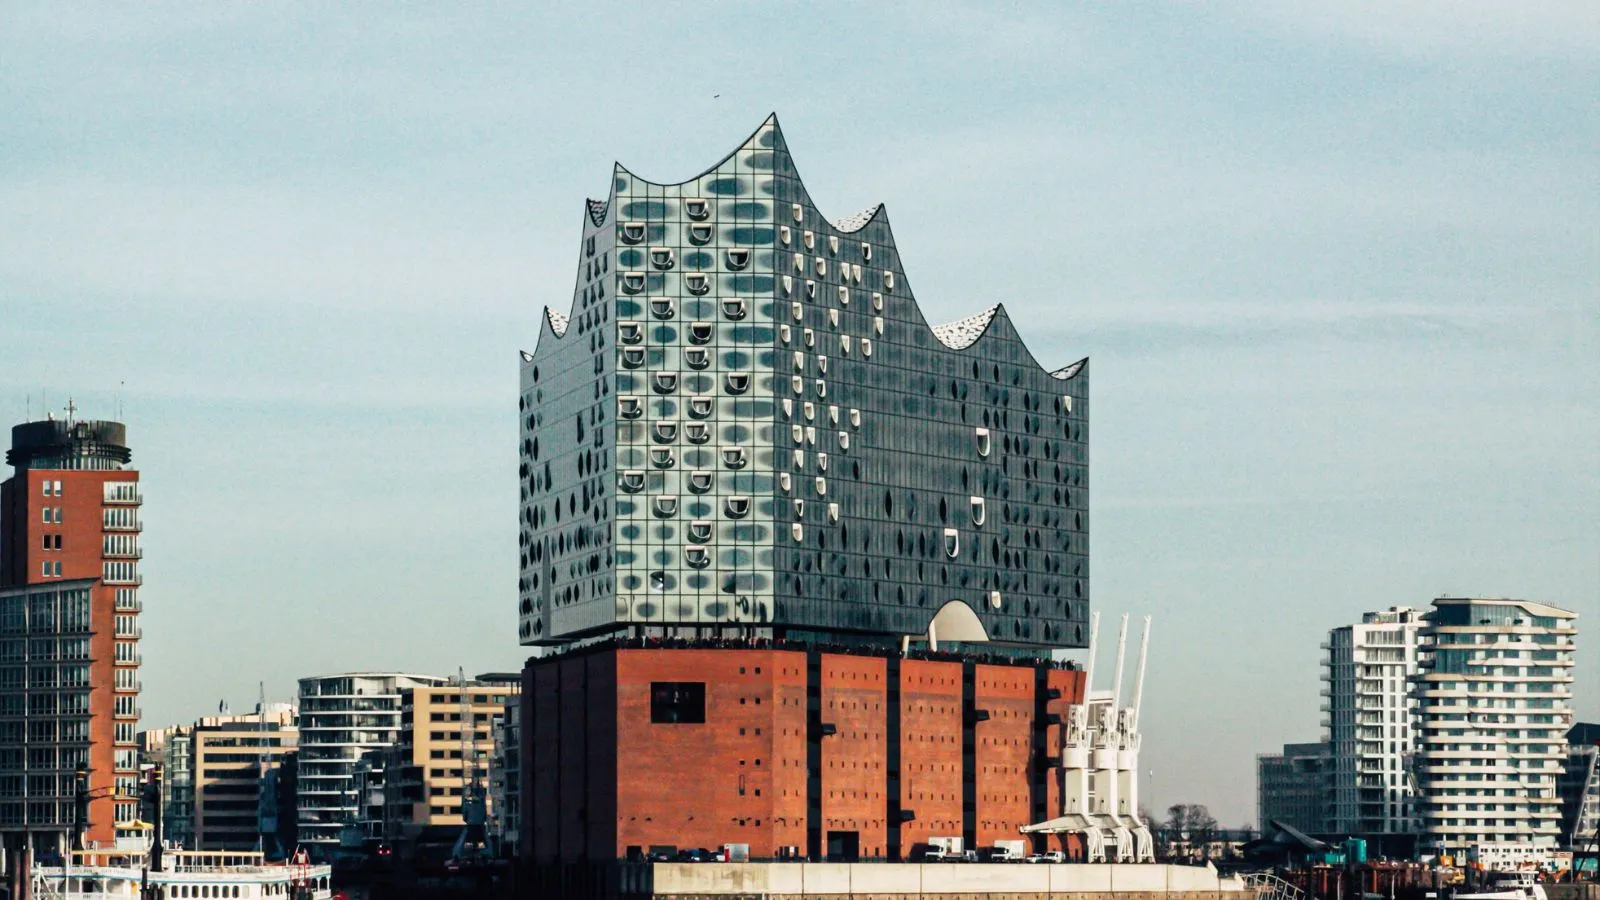 Das Bild zeigt die Elbphilharmonie Konzerthalle mit ihrer wellenförmigen Glasfassade, die sich in Hamburg, Deutschland, gegen einen klaren Himmel abzeichnet.